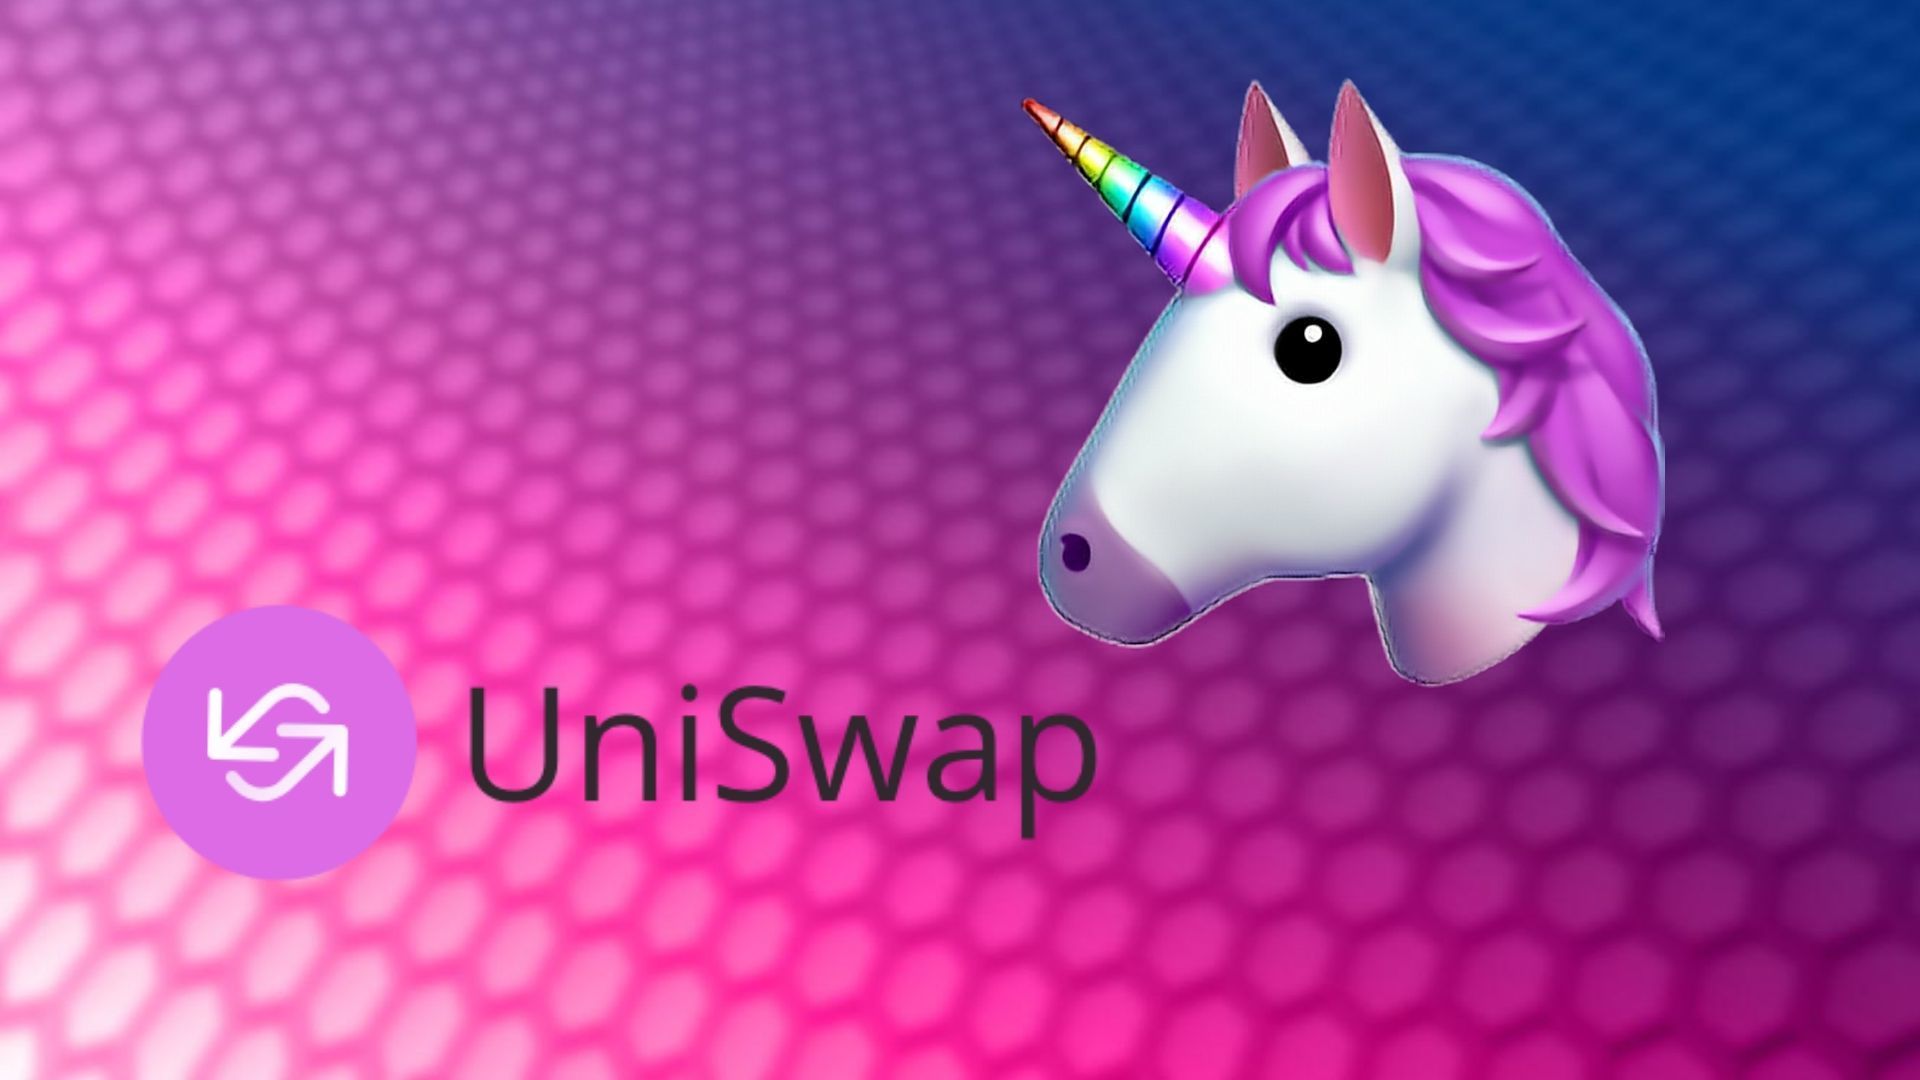 Uniswap, Toplam değeri (kilitli oran) 2 milyar dolara ulaşan ilk DeFi protokolü oldu.